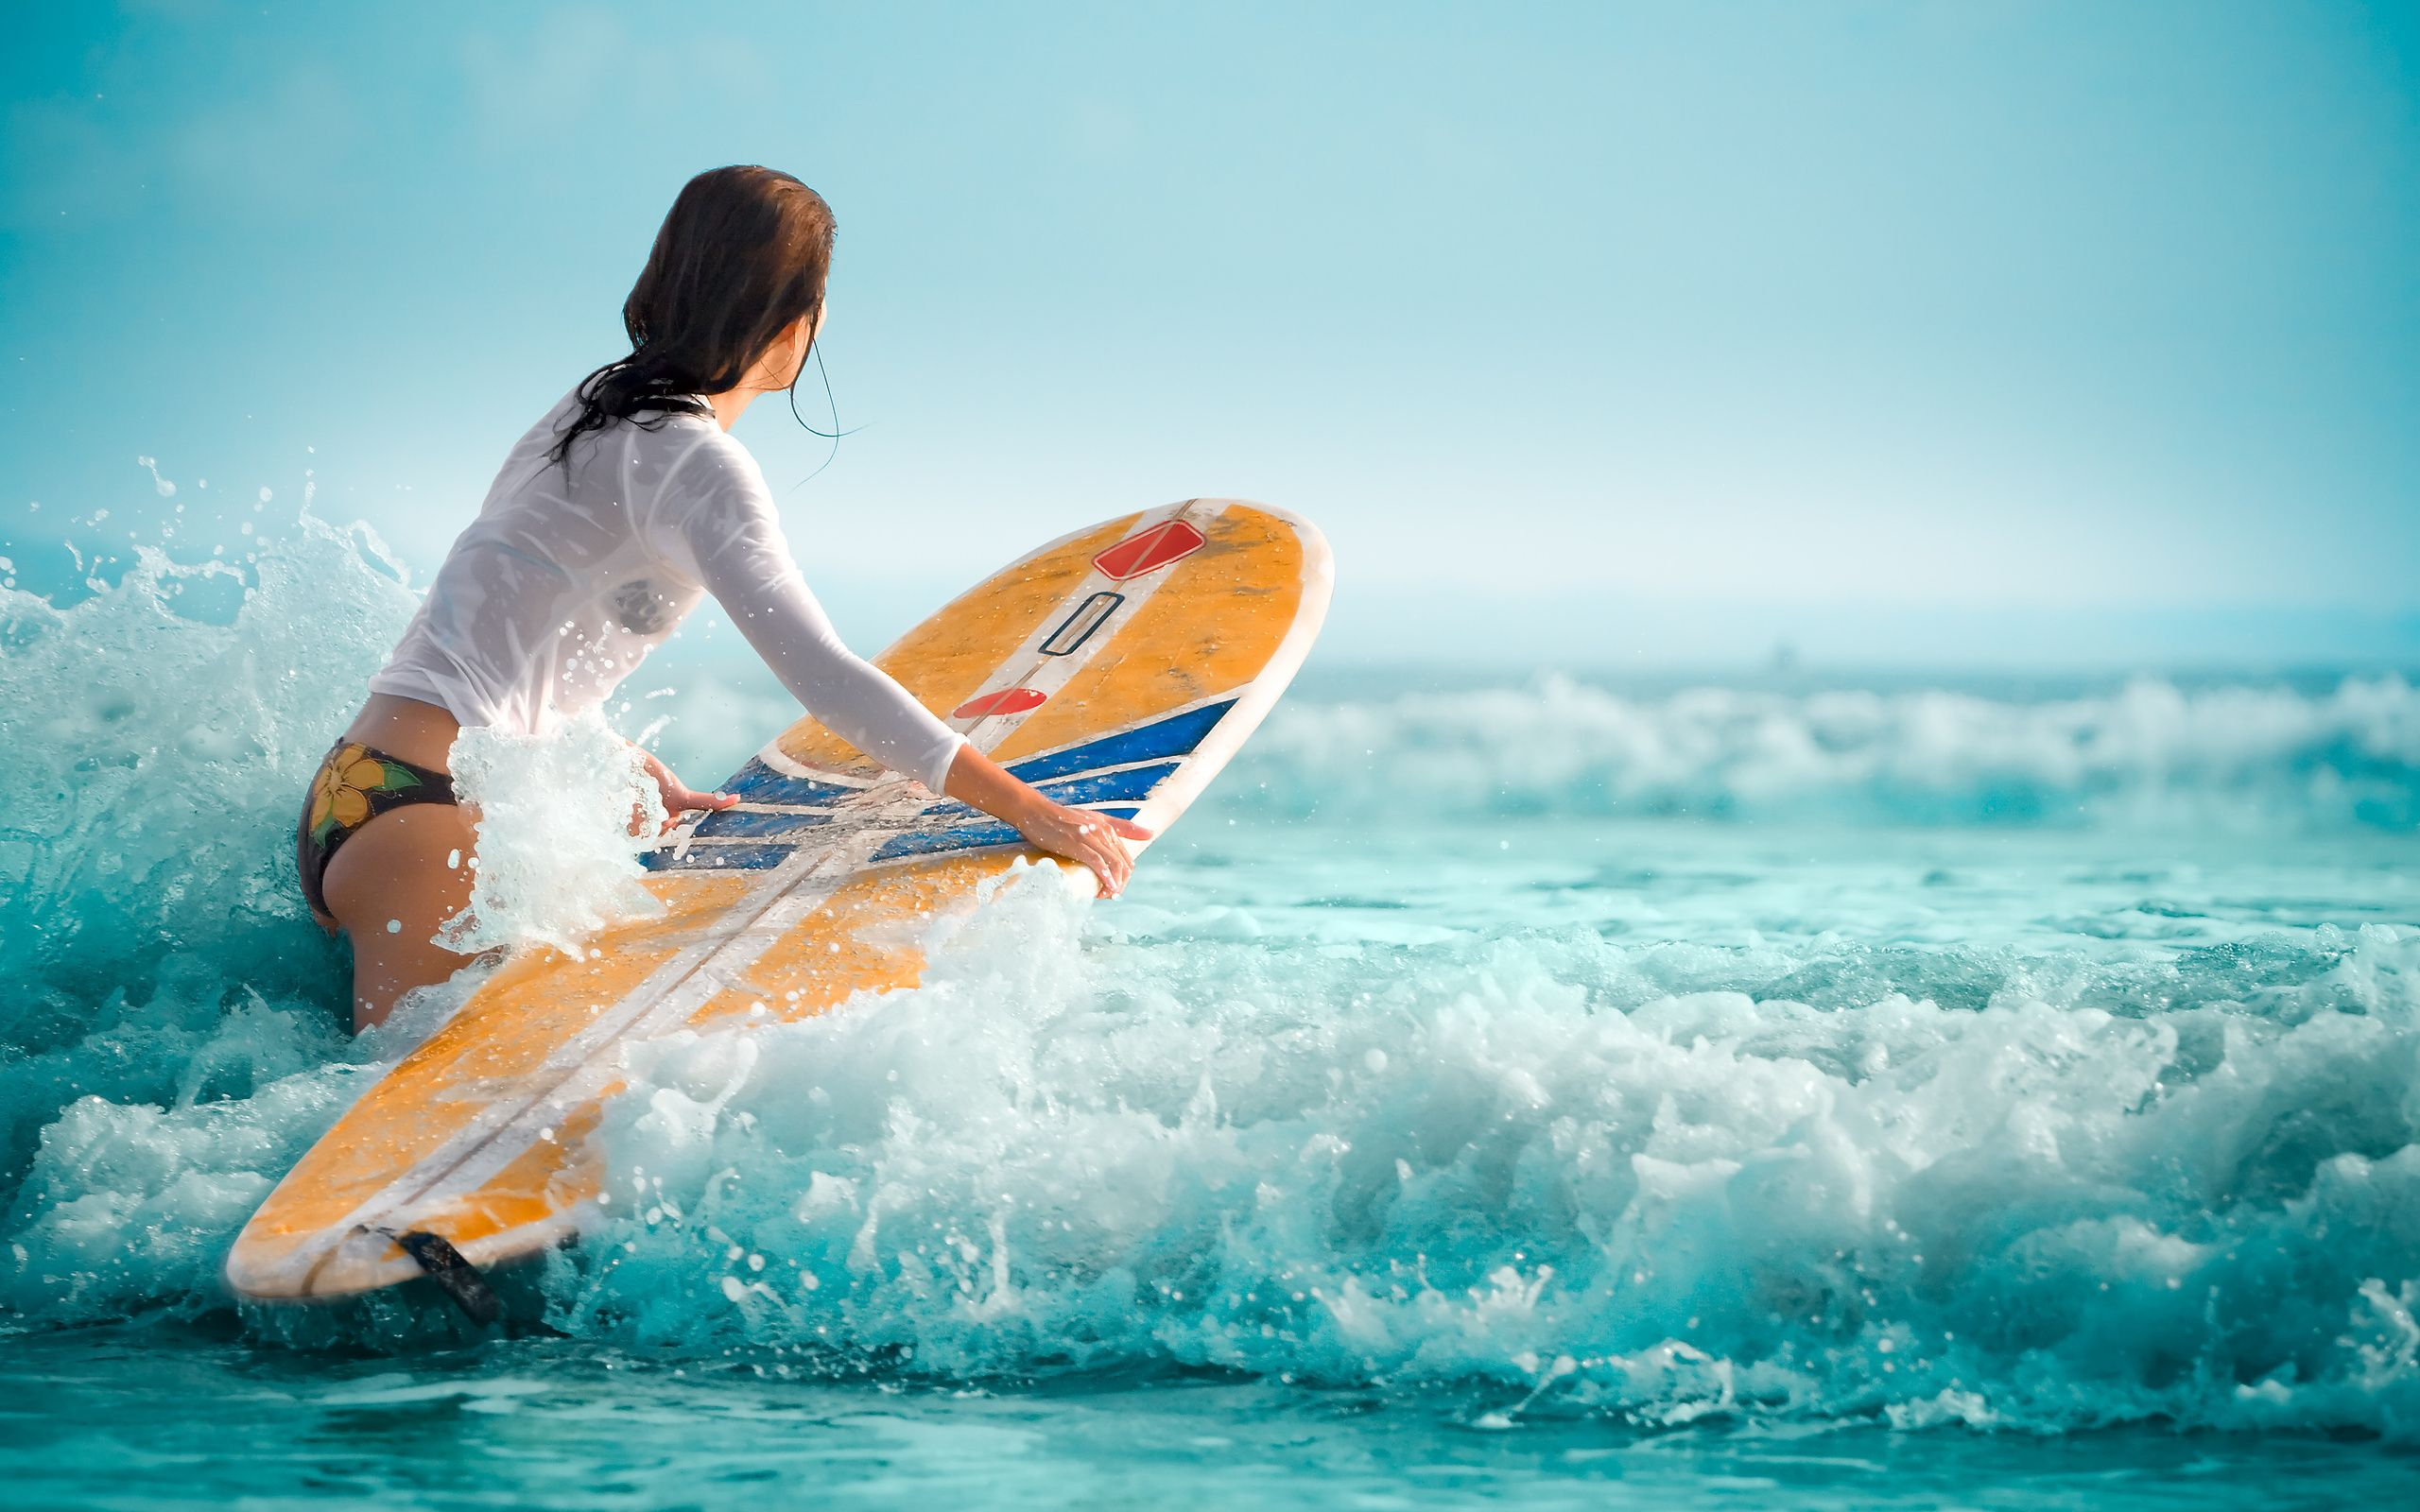 2560x1600 Surfing Girl | Surfing wallpaper, Surfing waves, Surfing